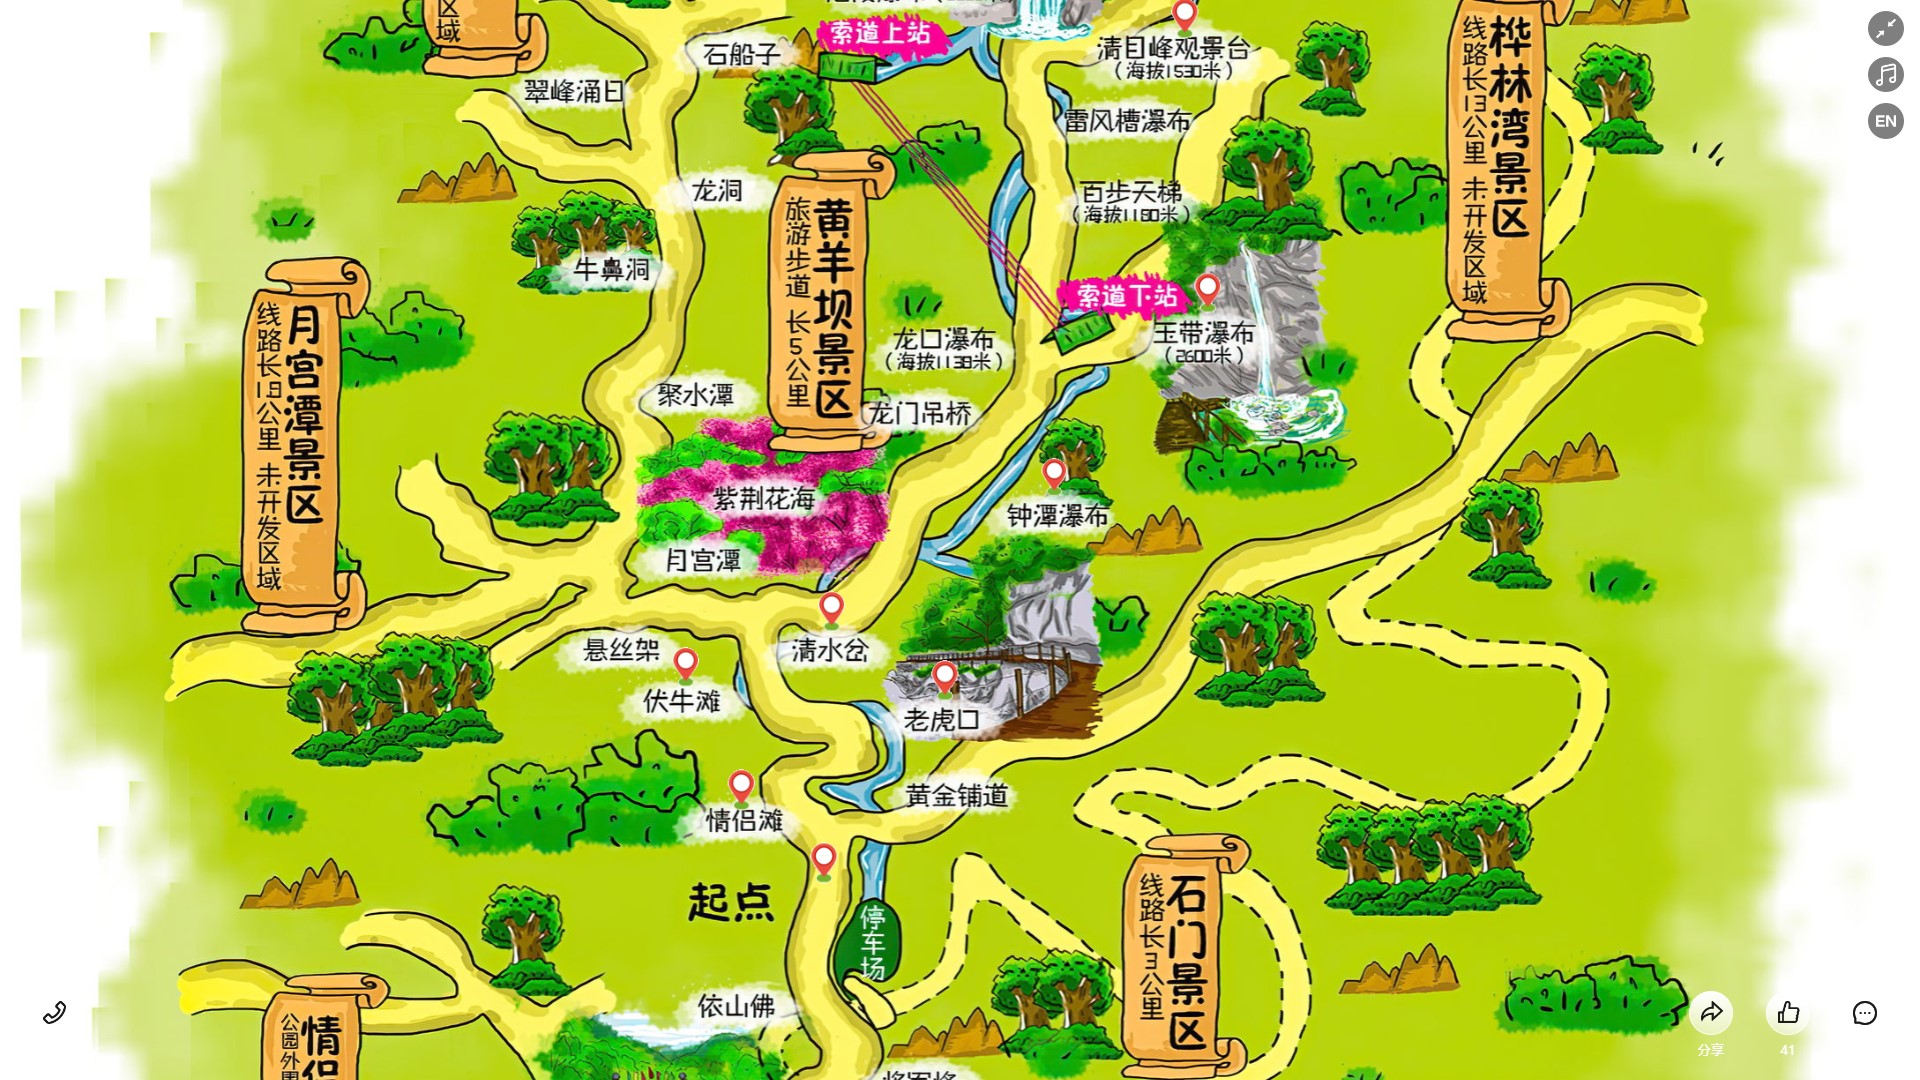 道县景区导览系统